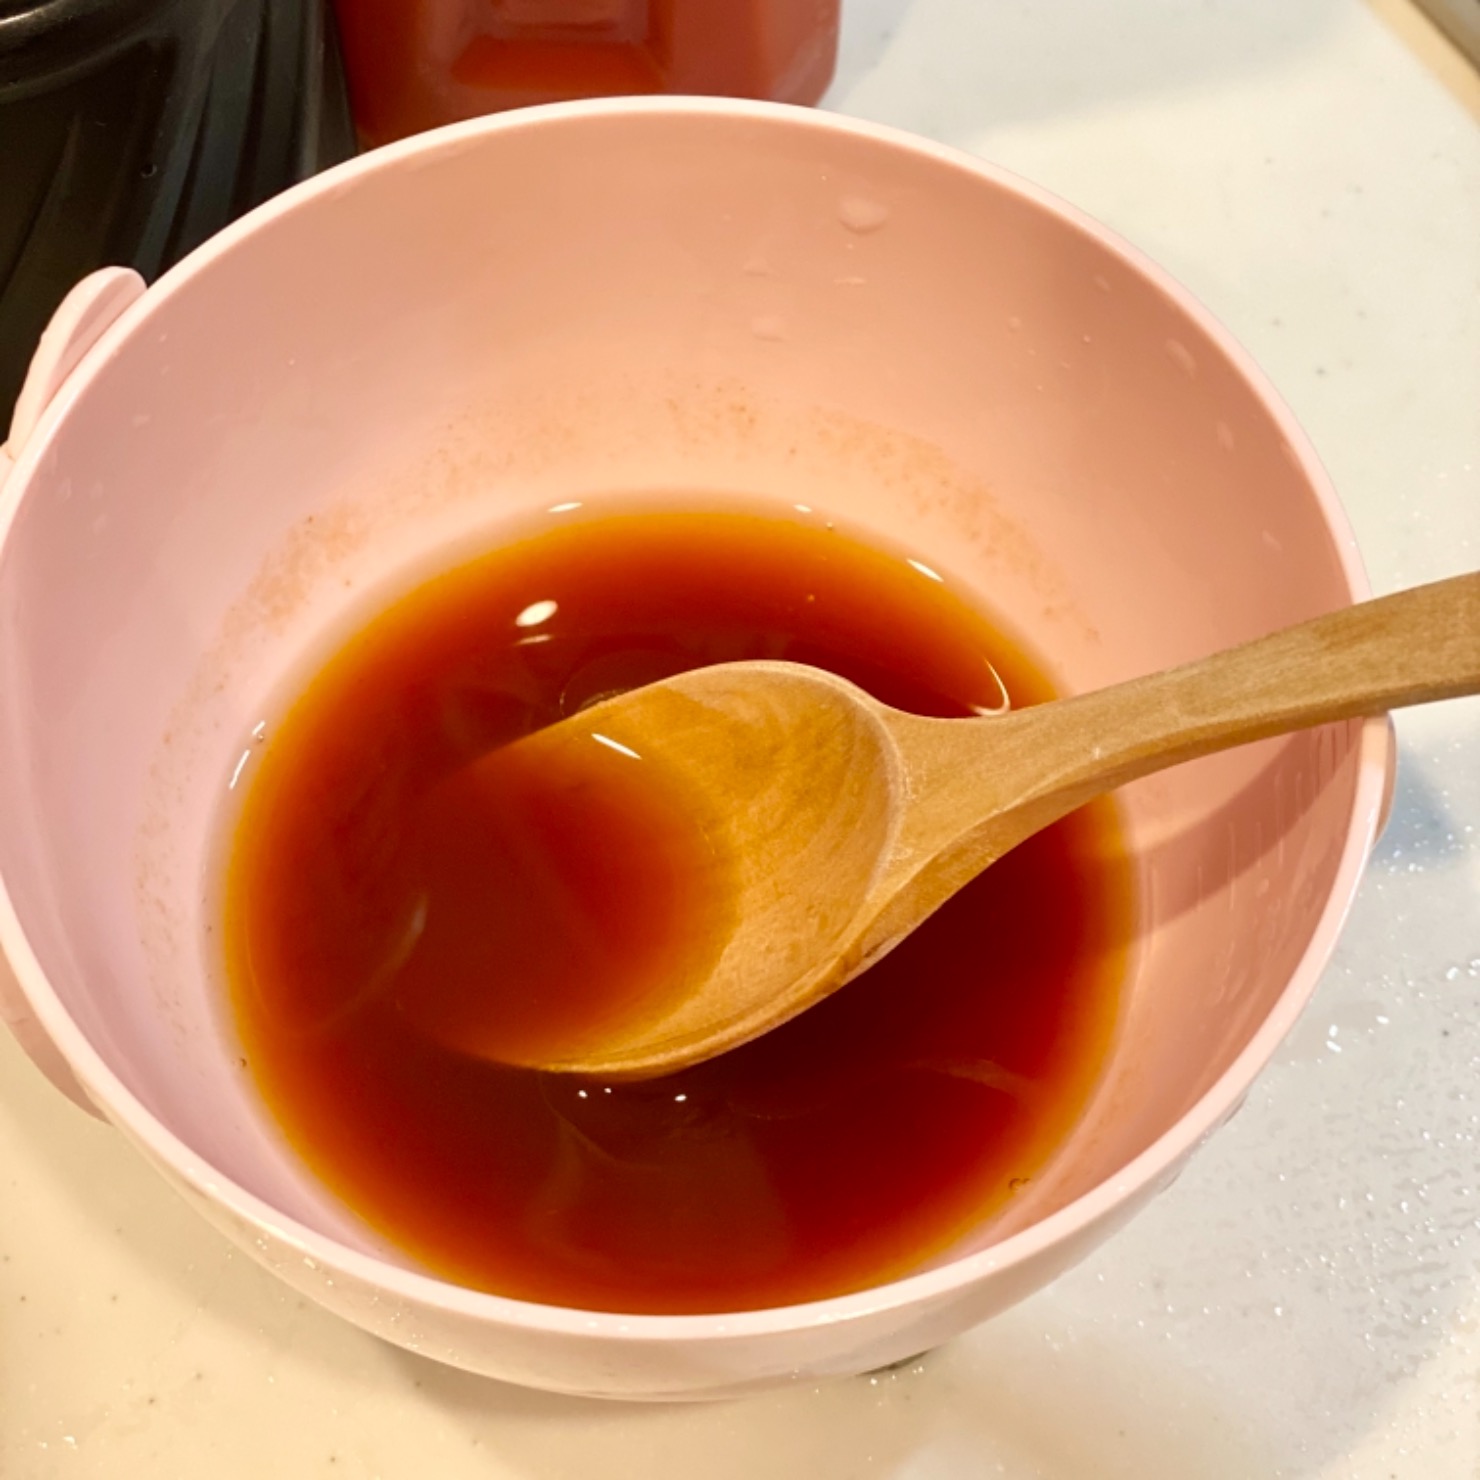 スープを作る。
麺つゆとトマトジュースを1:1で合わせ、水でお好みの味に調整する